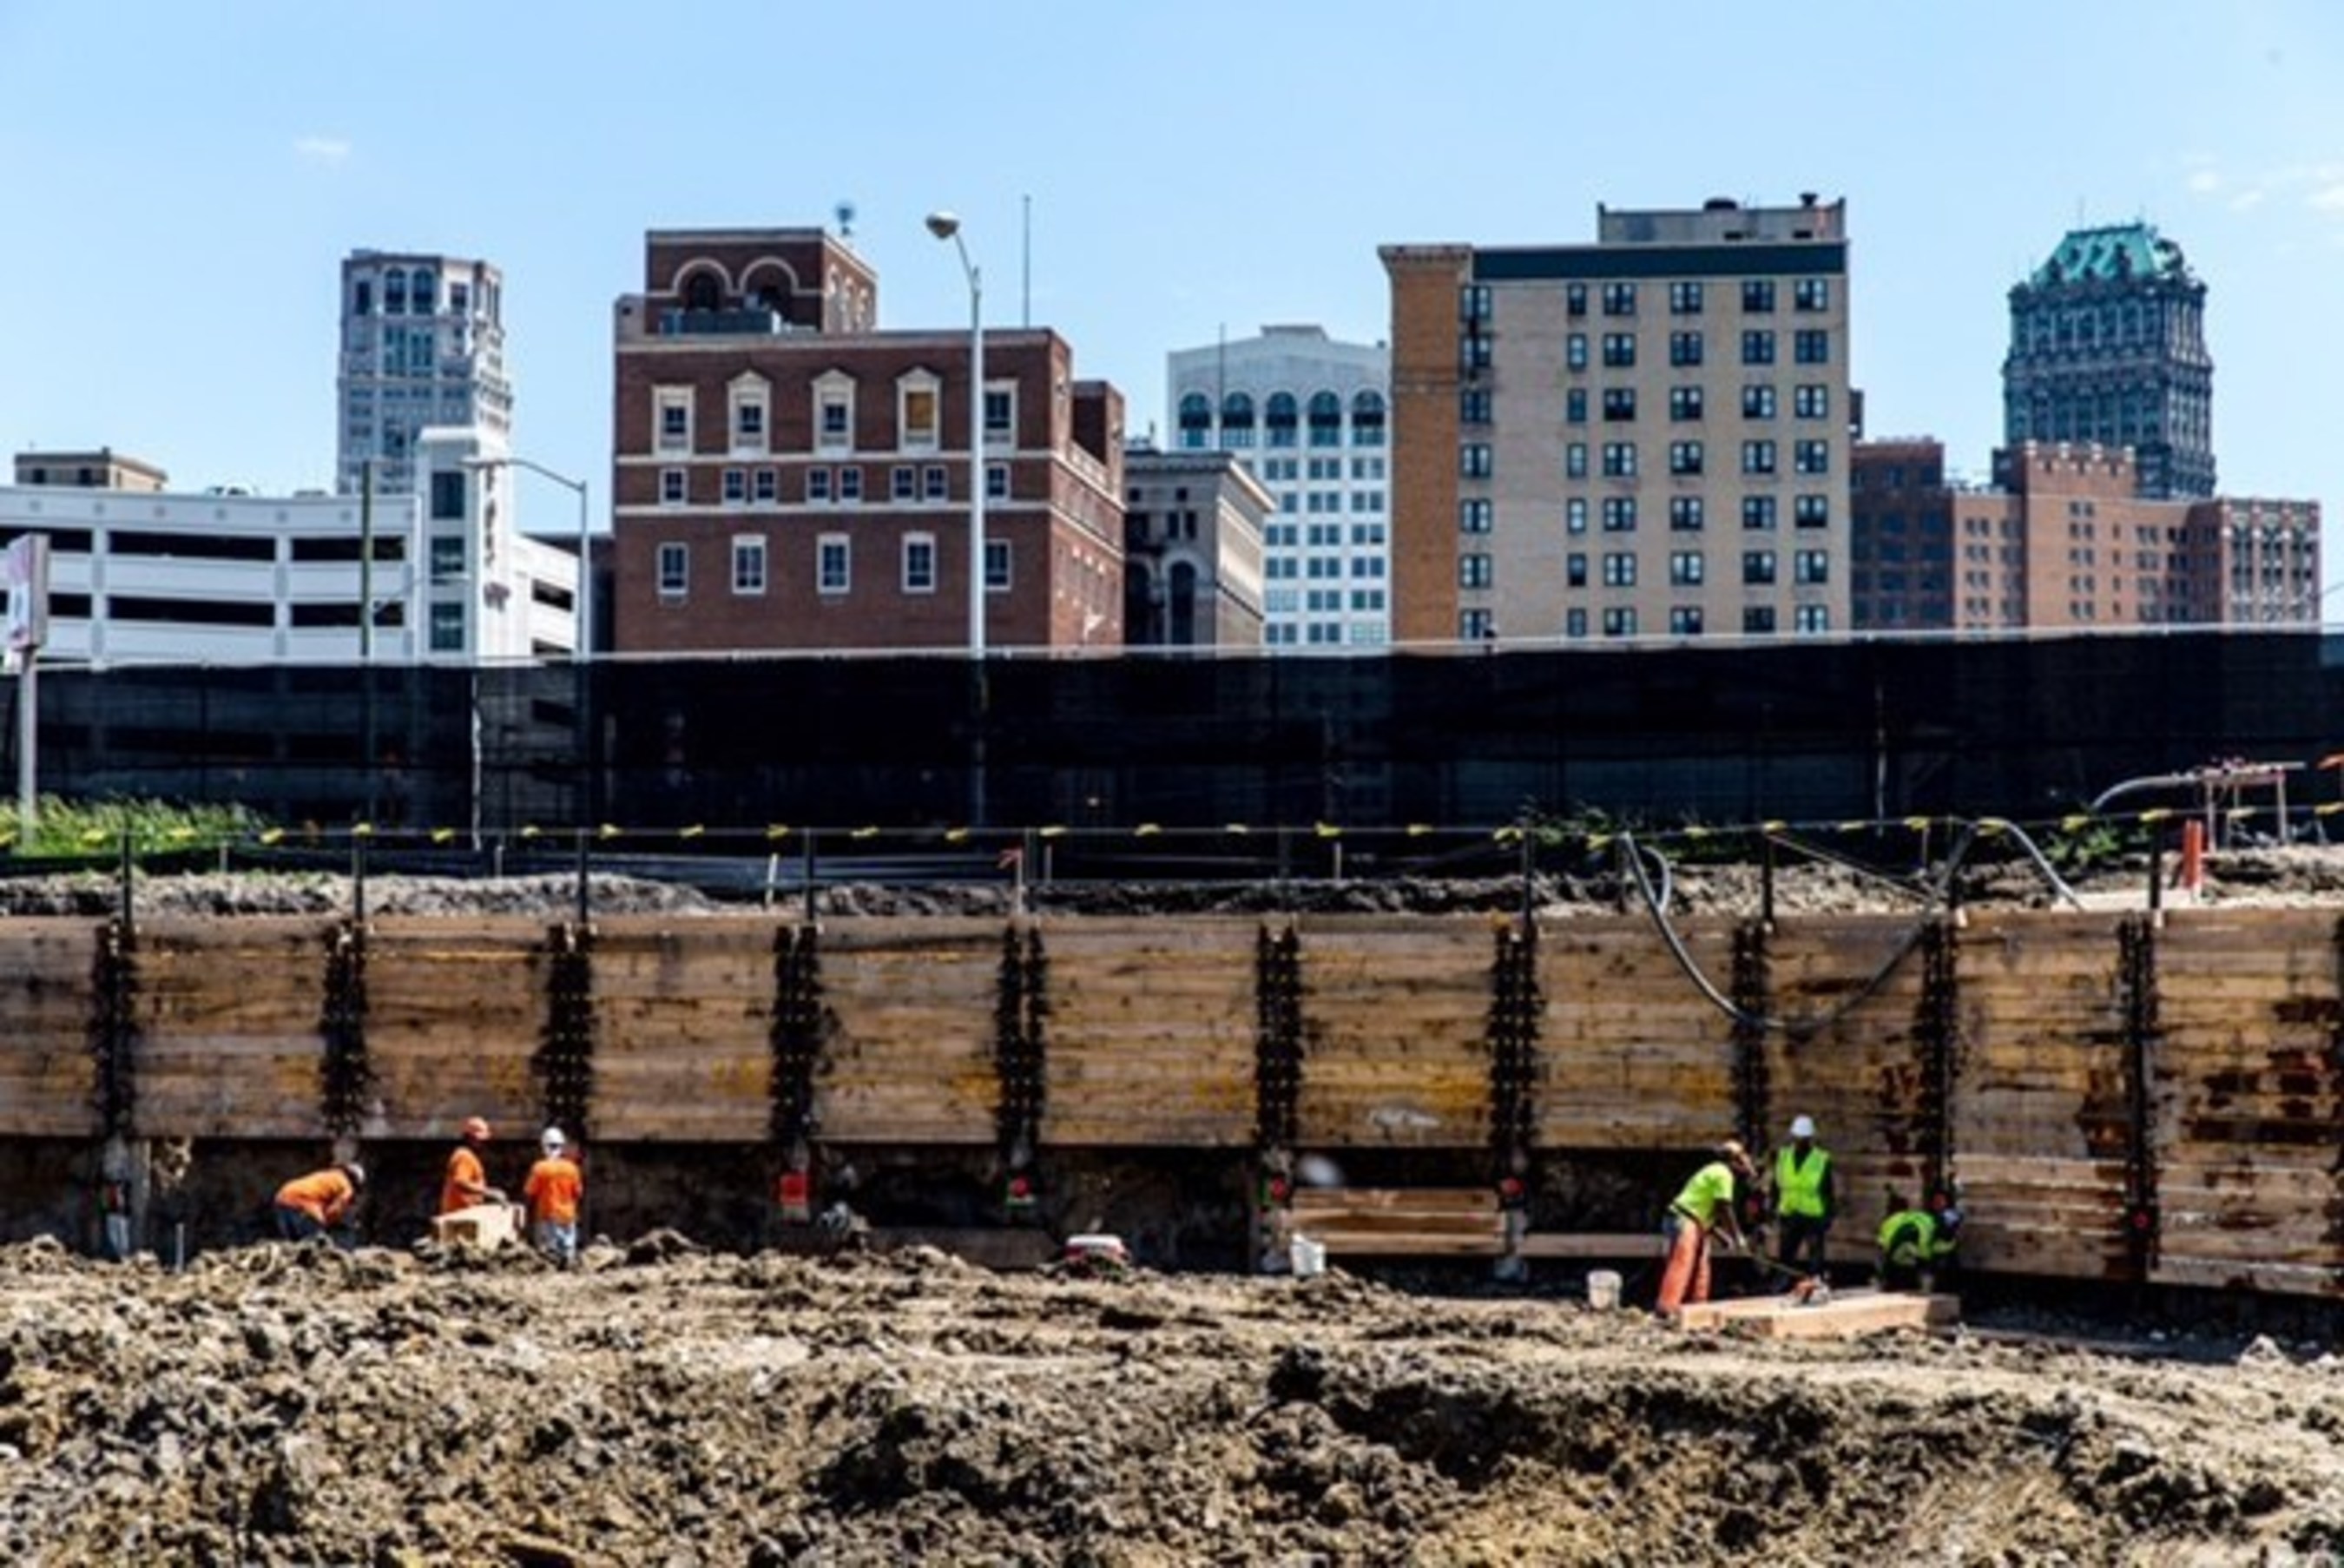 Detroit Events Center excavation progress. June 11, 2015.